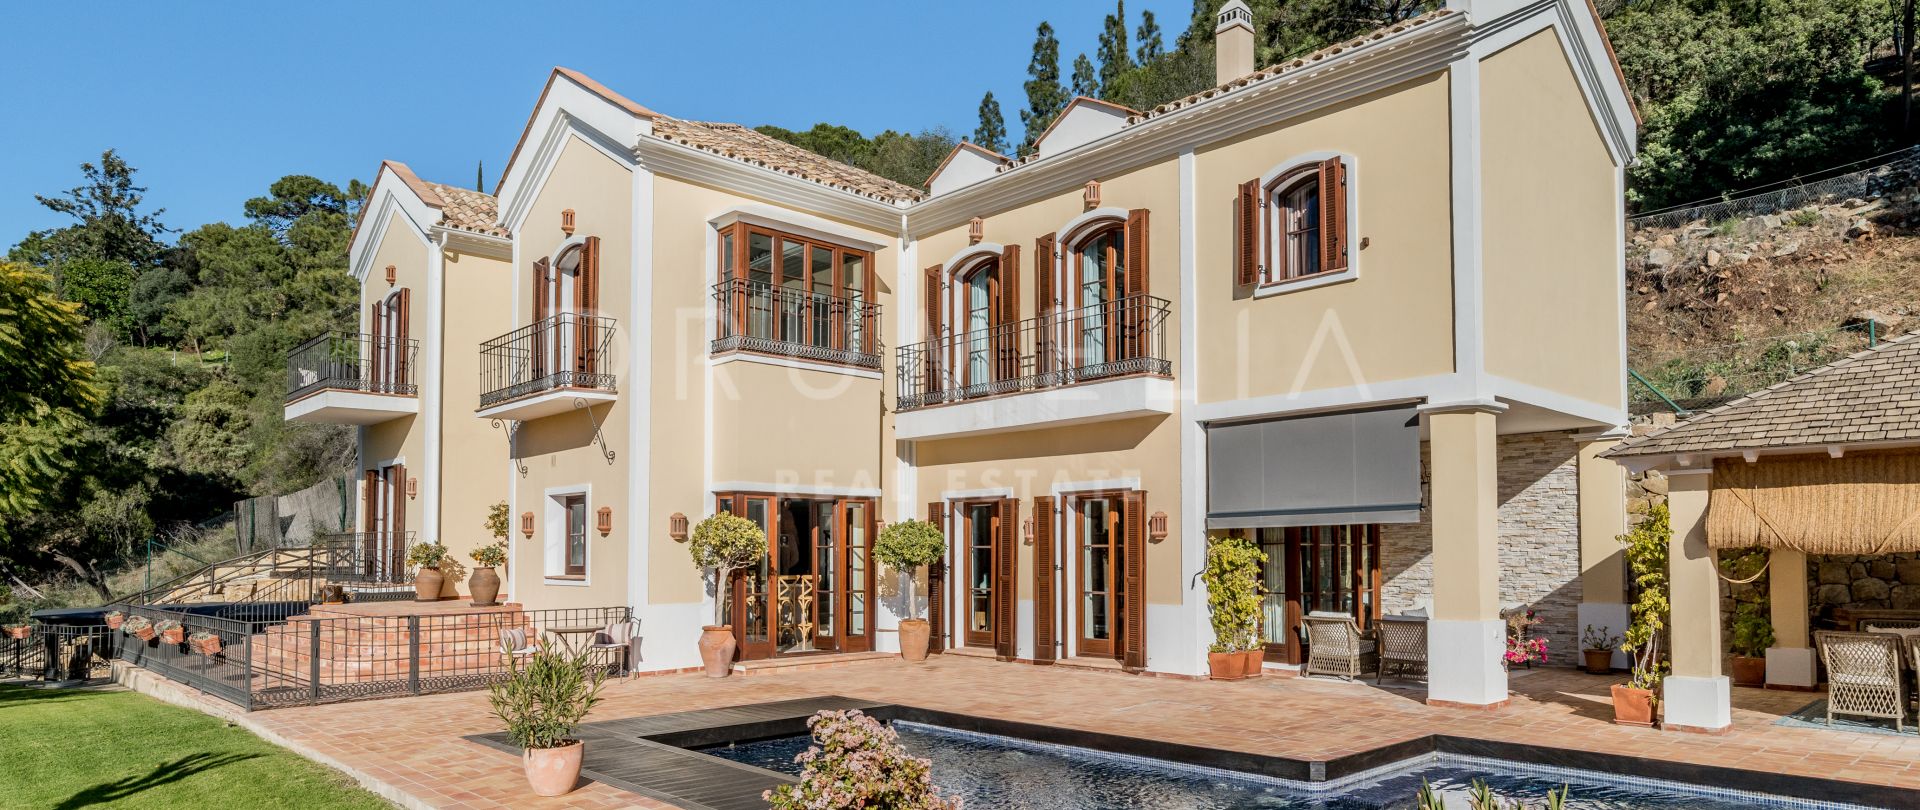 Wunderschöne Luxus-Familienvilla im mediterranen Stil mit südlichem Charme in El Madroñal